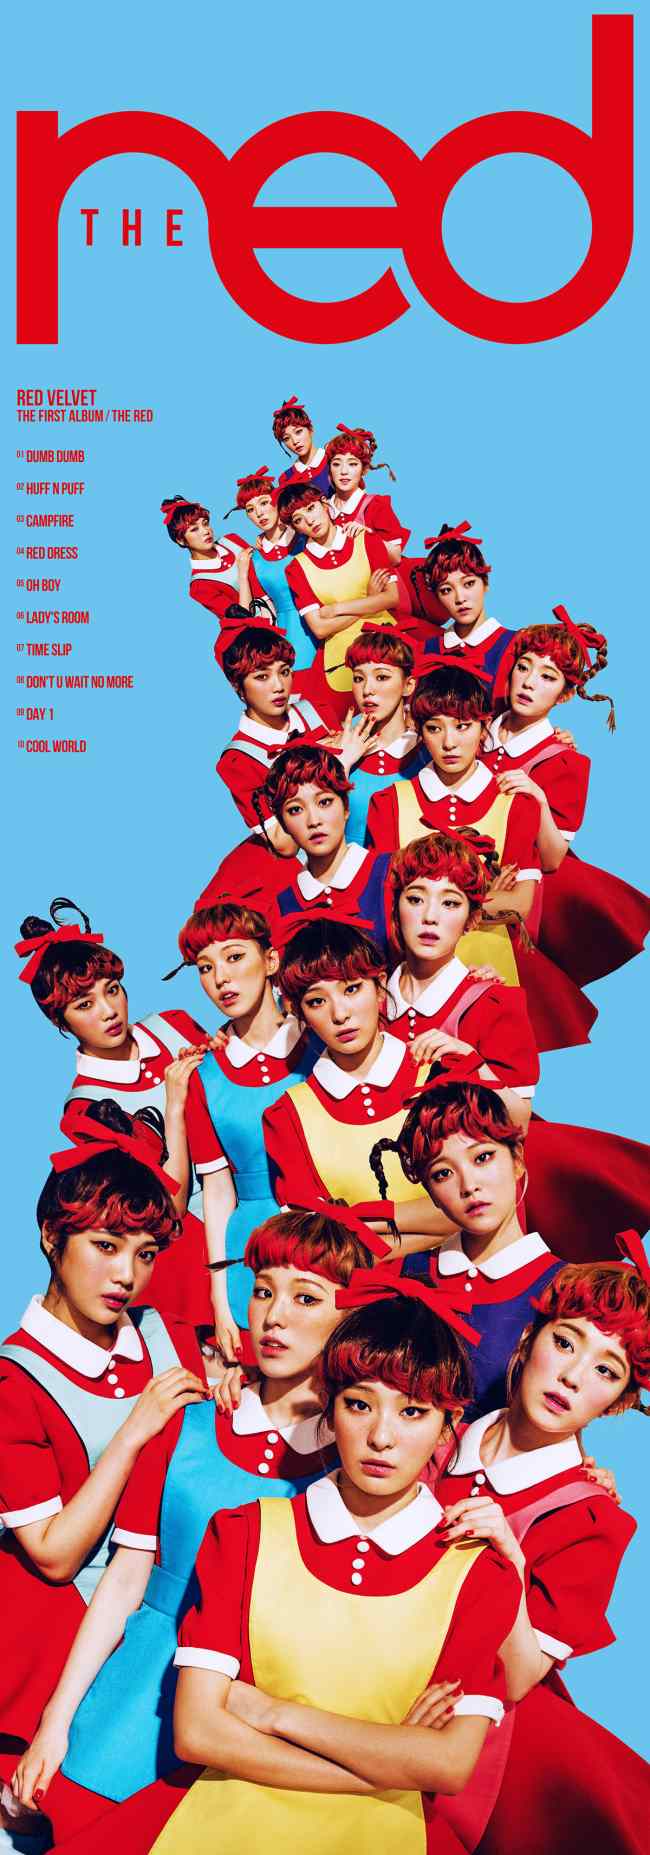 Red Velvet《THE red》曲目表